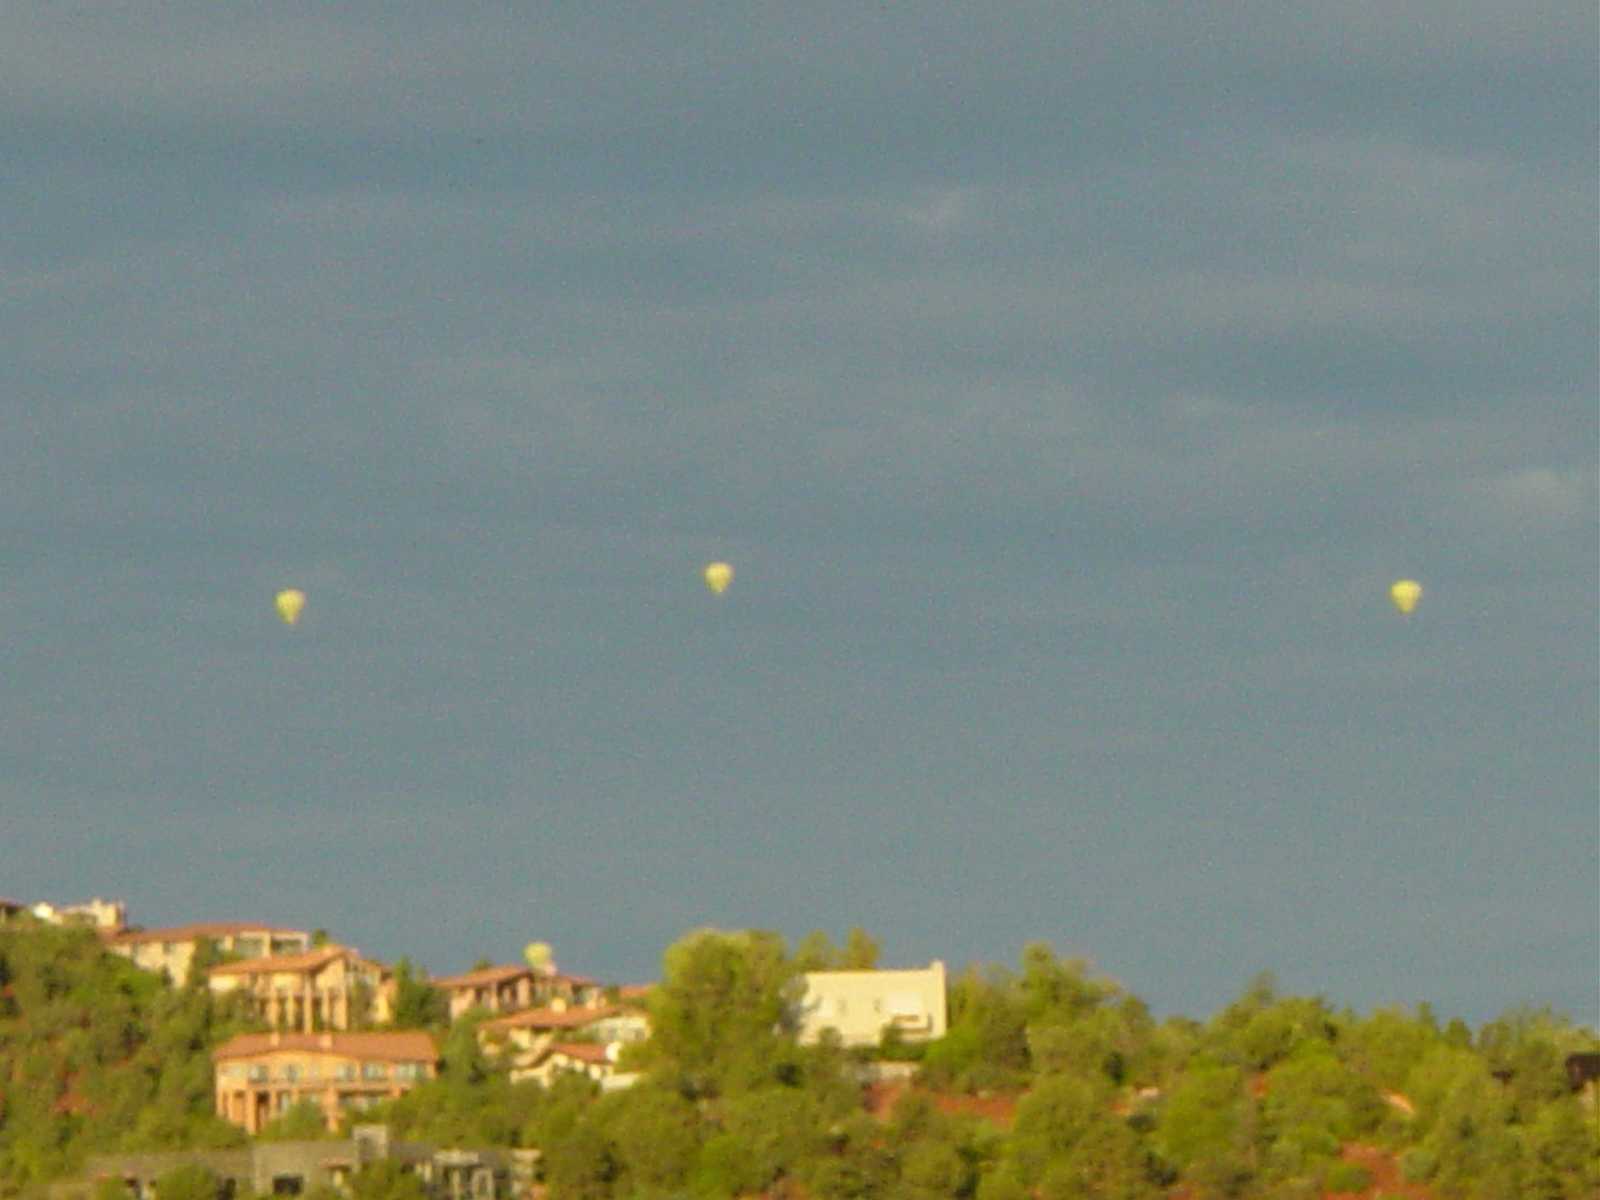 Early morning hot air balloons